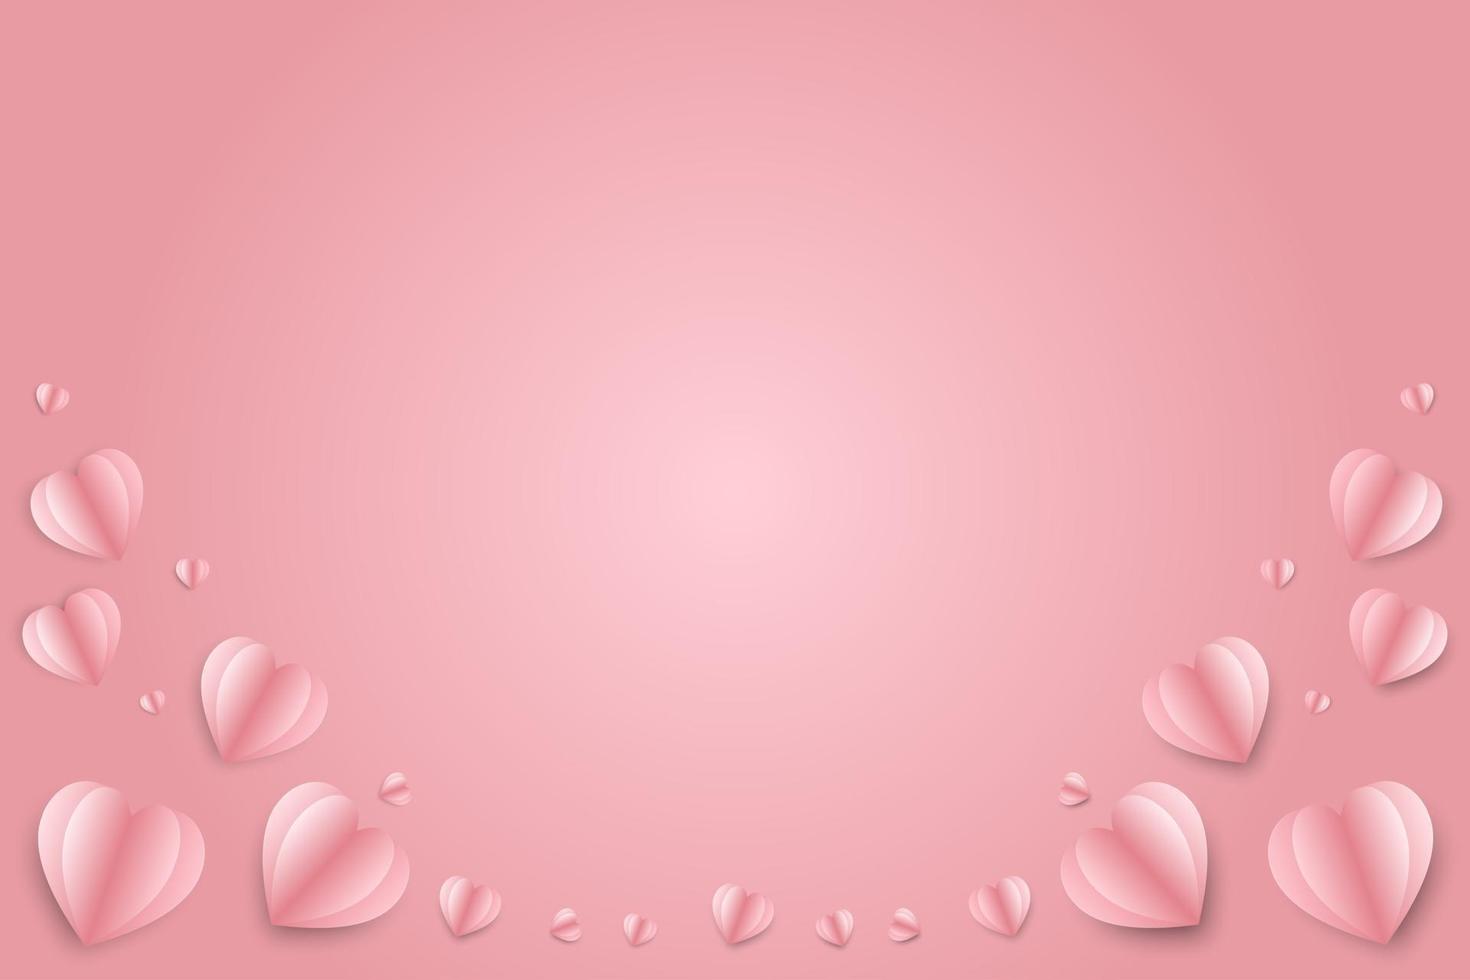 ilustración vectorial Fondo del concepto del día de San Valentín, corazones de papel rojo y rosa 3d y nubes que se sostienen con un aguijón en la parte superior, el fondo rosa suave se siente como esponjoso en el aire. vector